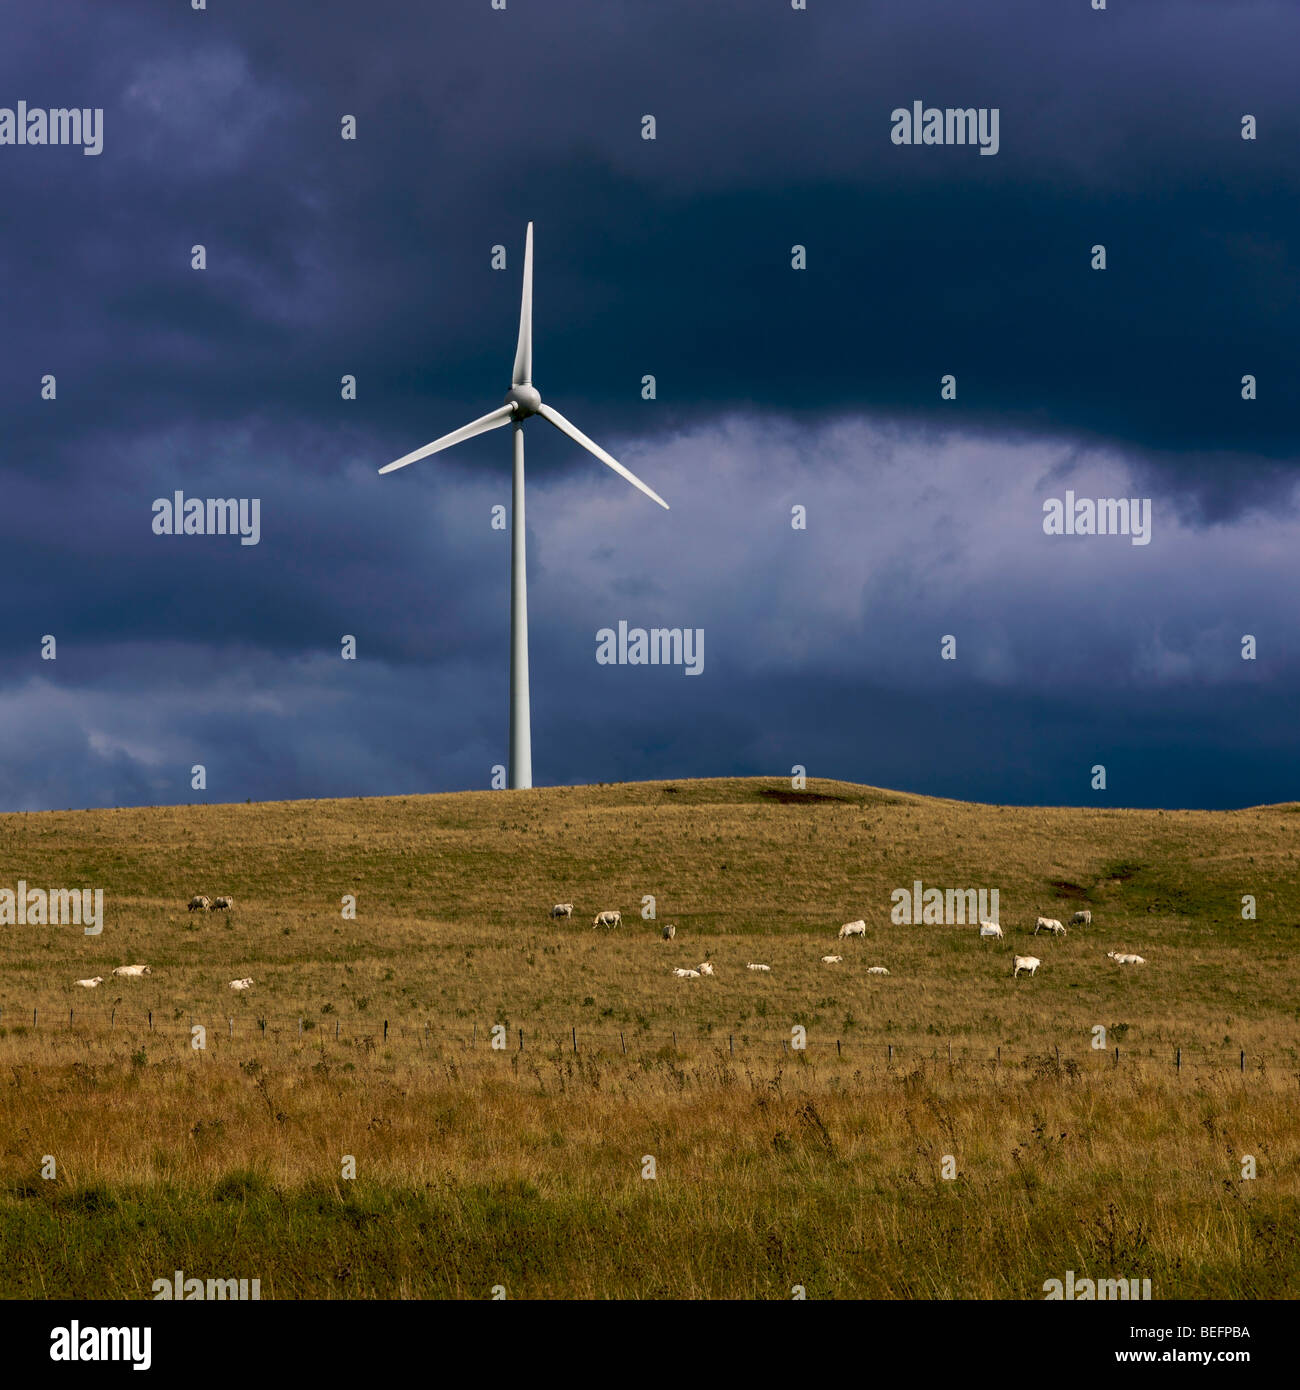 Gran aerogenerador en una meseta en un entorno rural con un oscuro cielo tormentoso Foto de stock